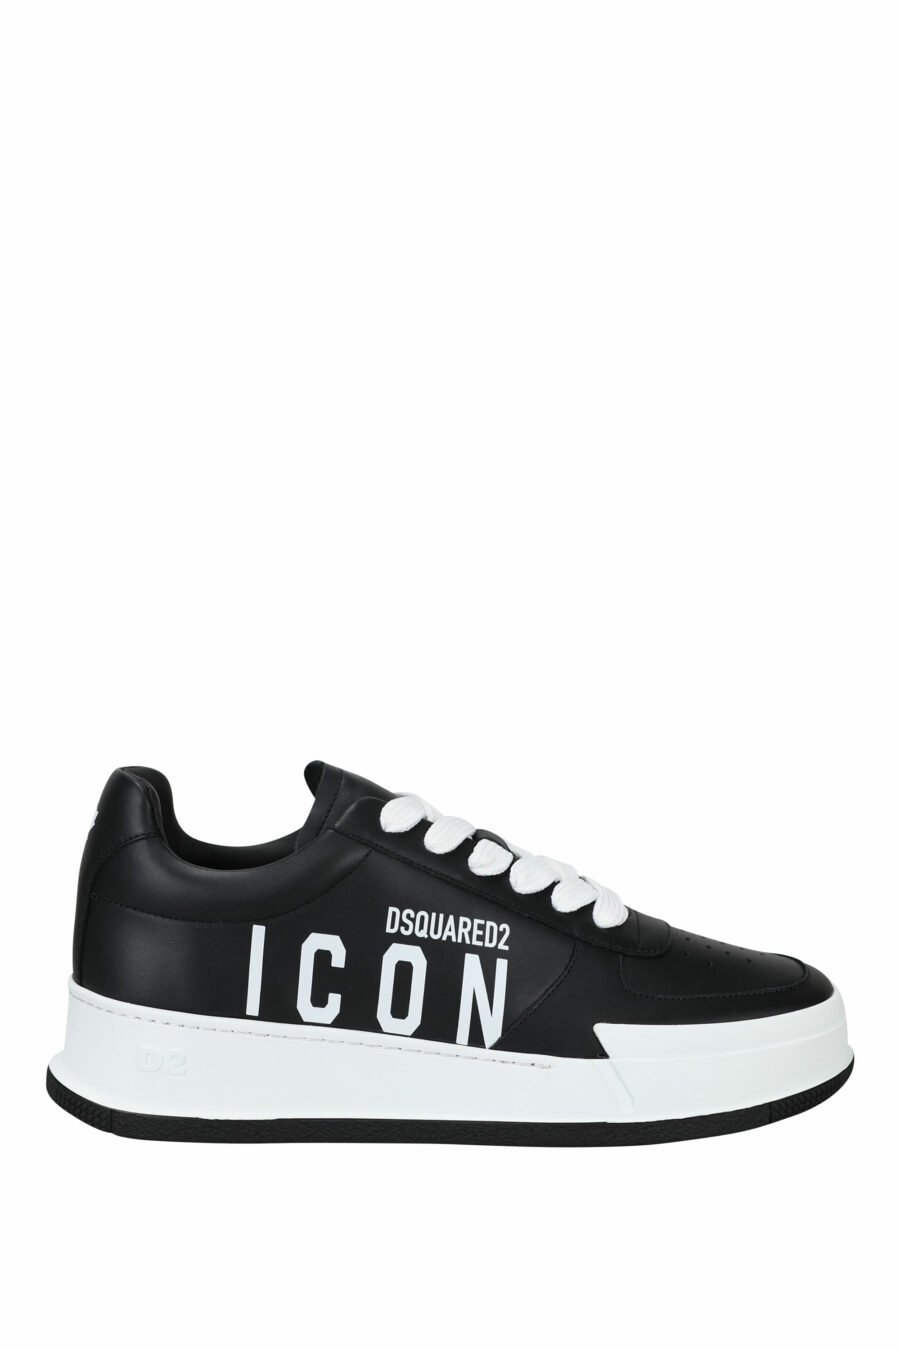 Zapatillas negras con logo "icon" y suela blanca - 8055777248911